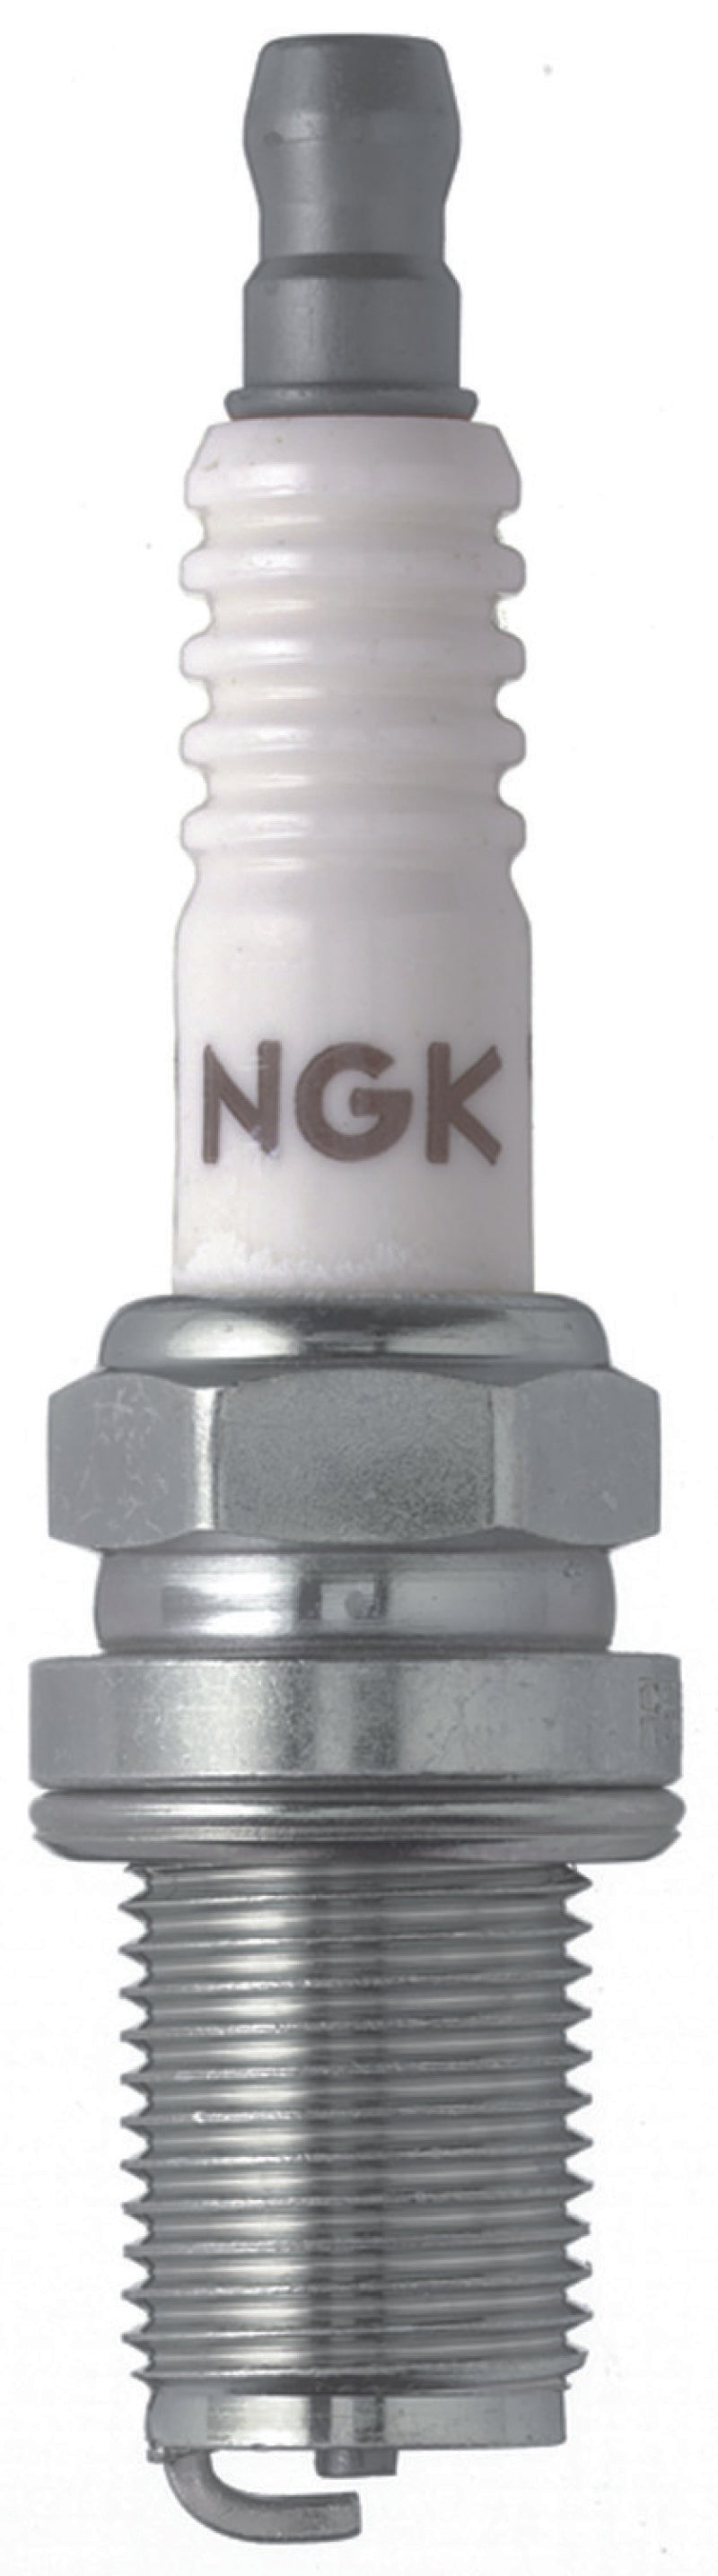 NGK Racing Spark Plug Box of 4 (R6601-10).